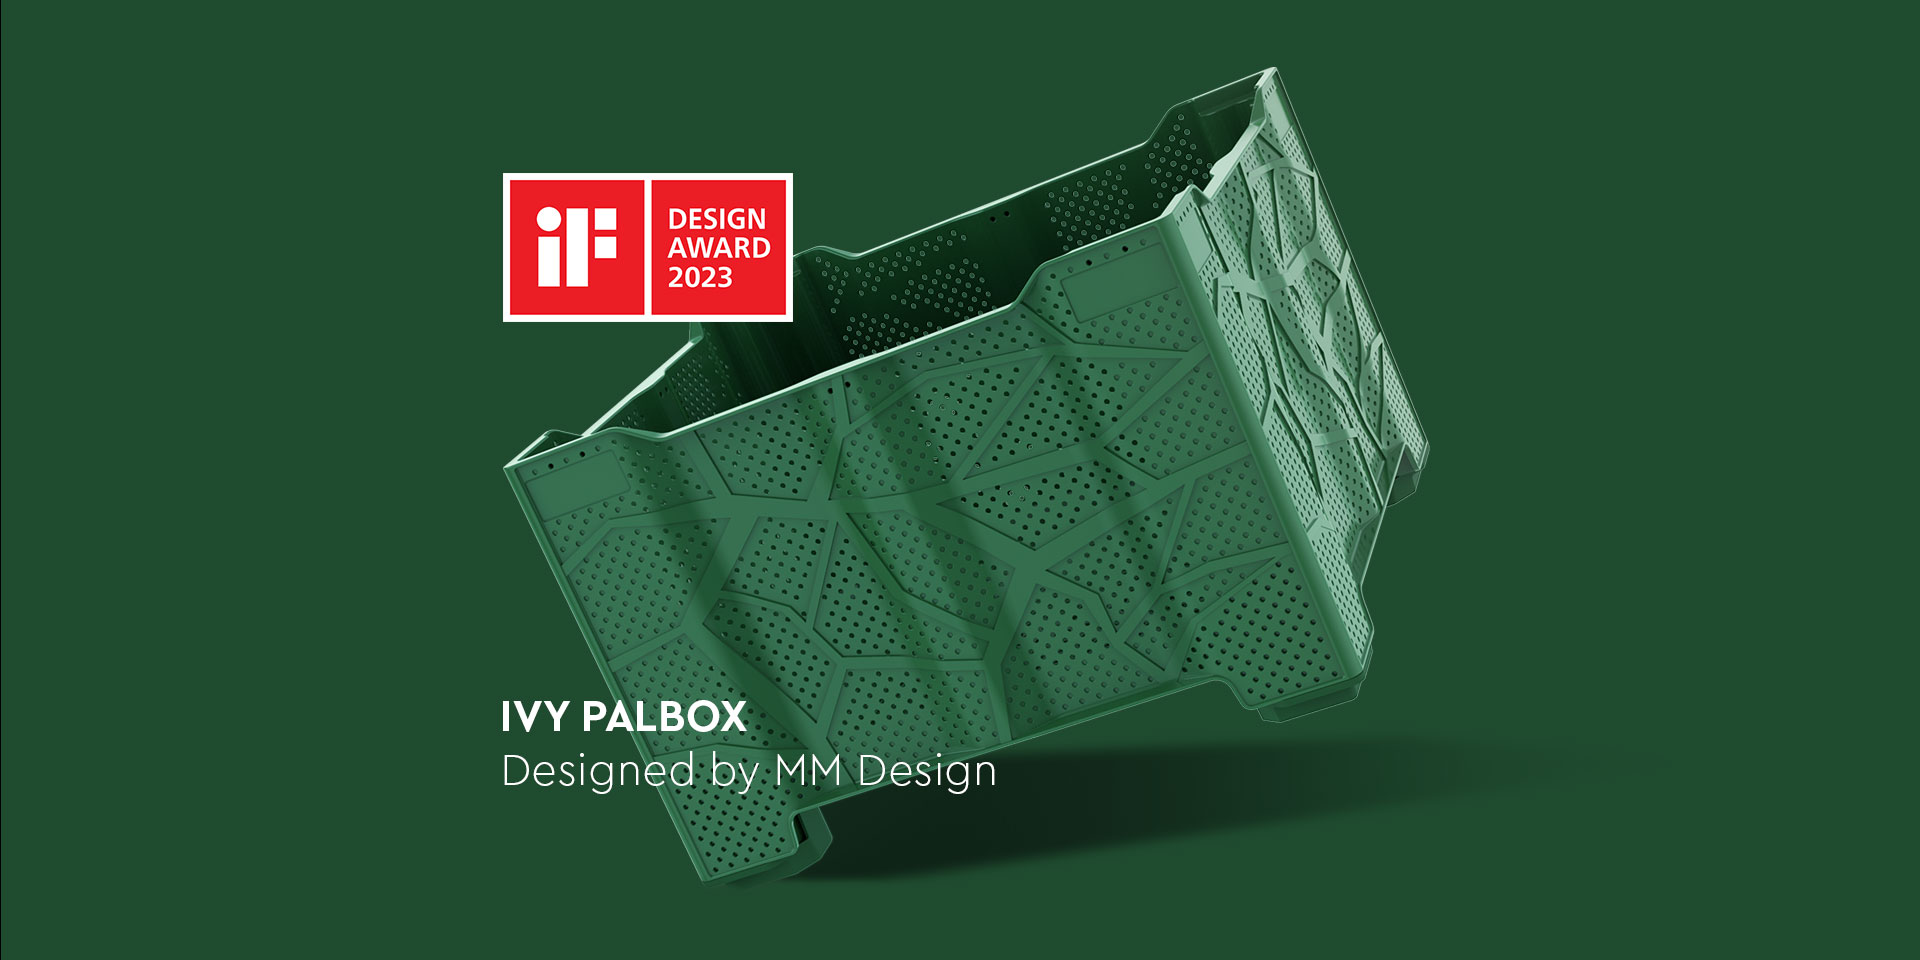 Un nuovo successo per Palbox e MM Design